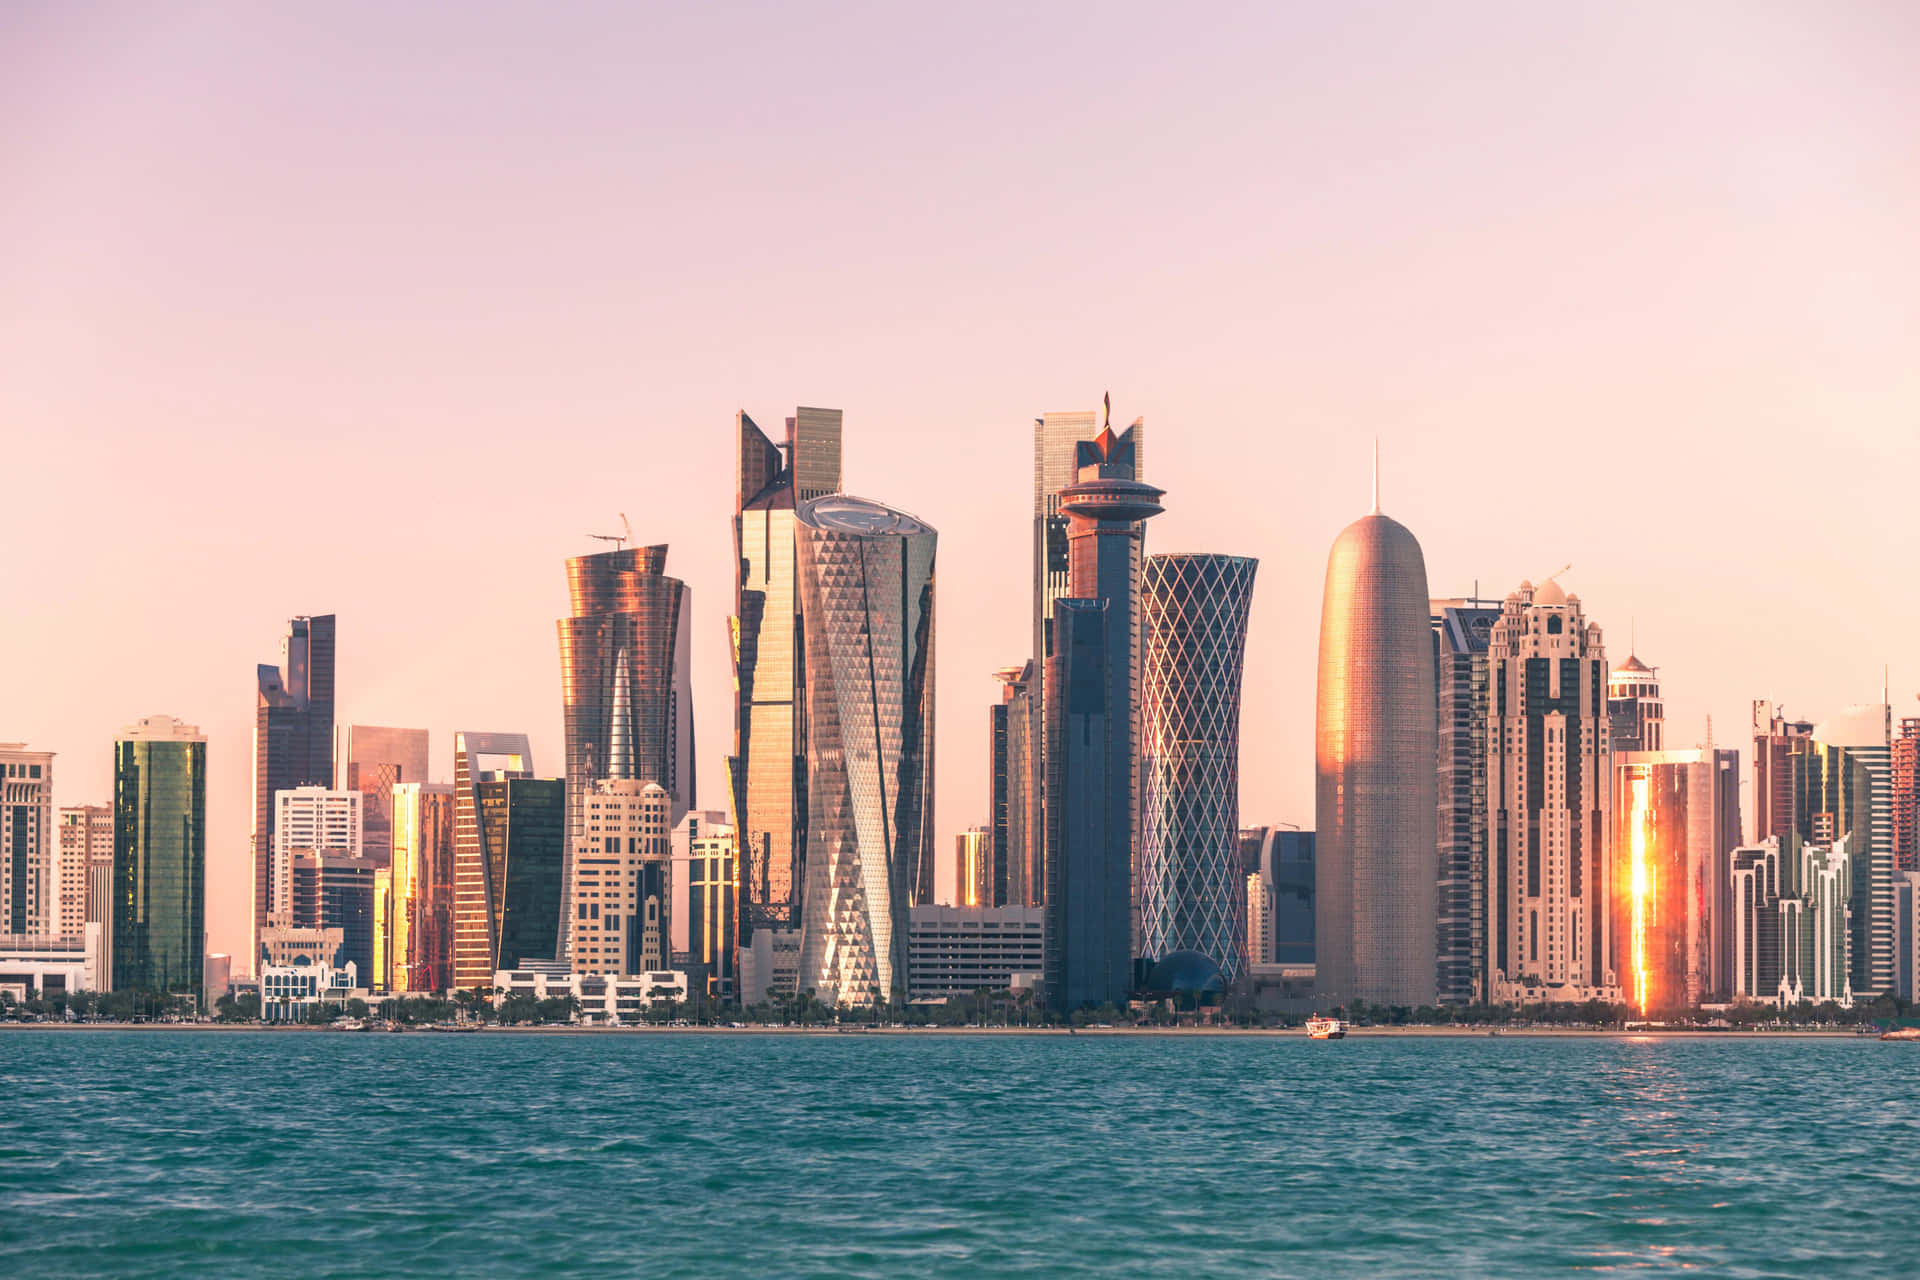 The sprawling metropolis of Qatar